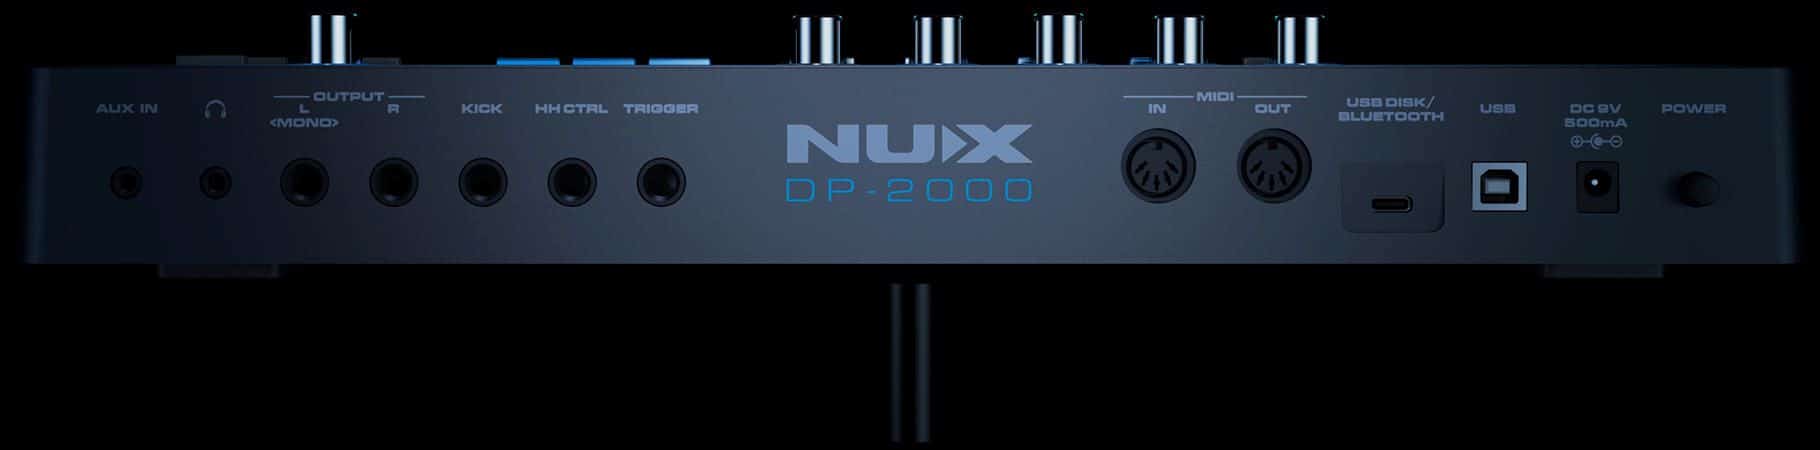 NUX DP-2000-Content-07